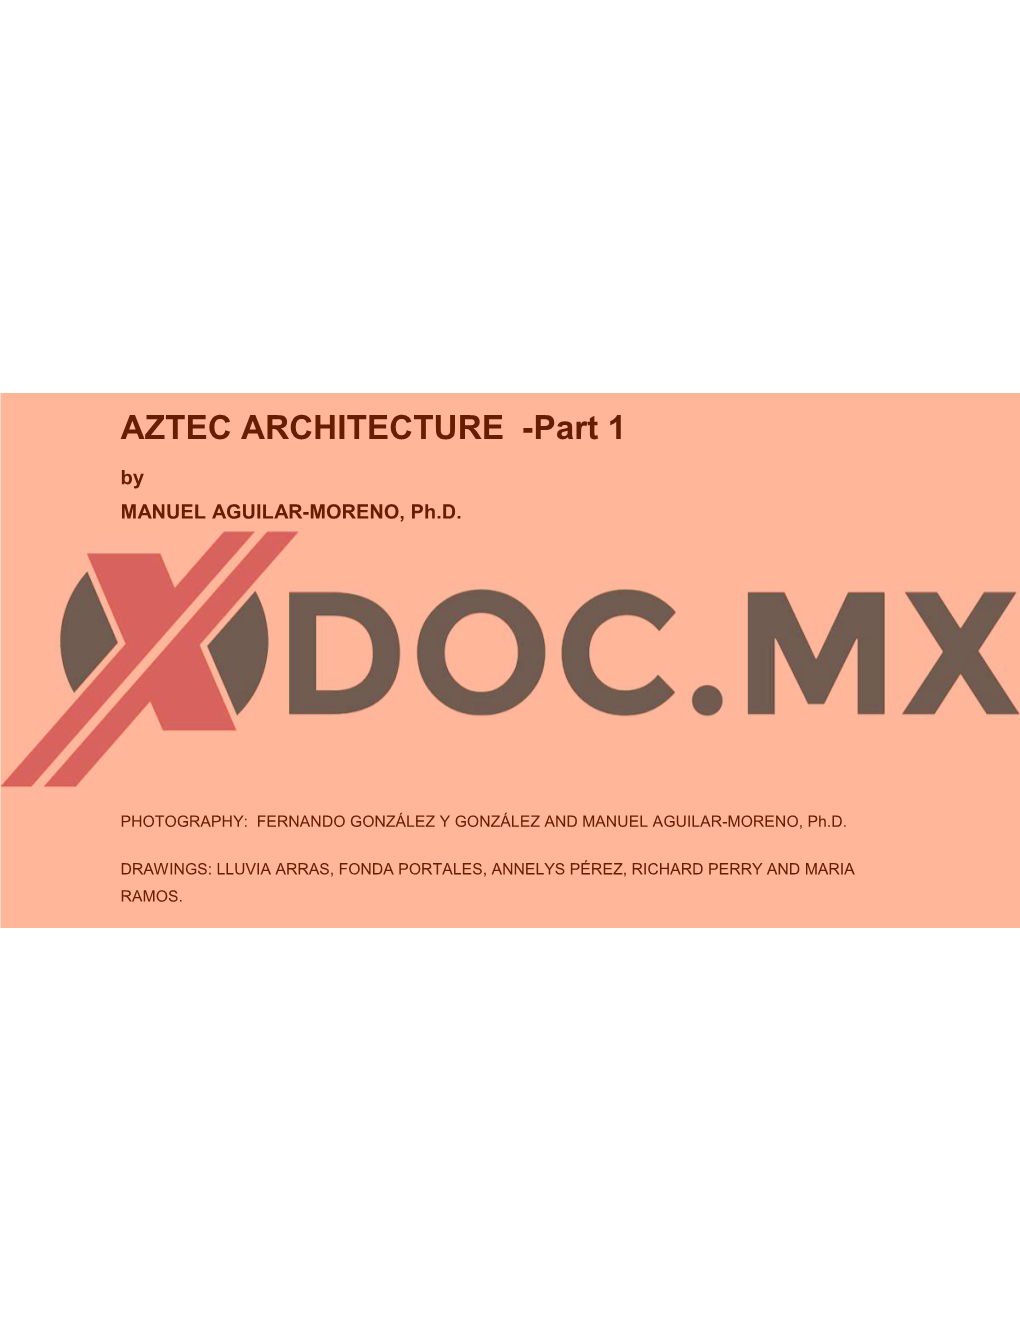 AZTEC ARCHITECTURE -Part 1 by MANUEL AGUILAR-MORENO, Ph.D